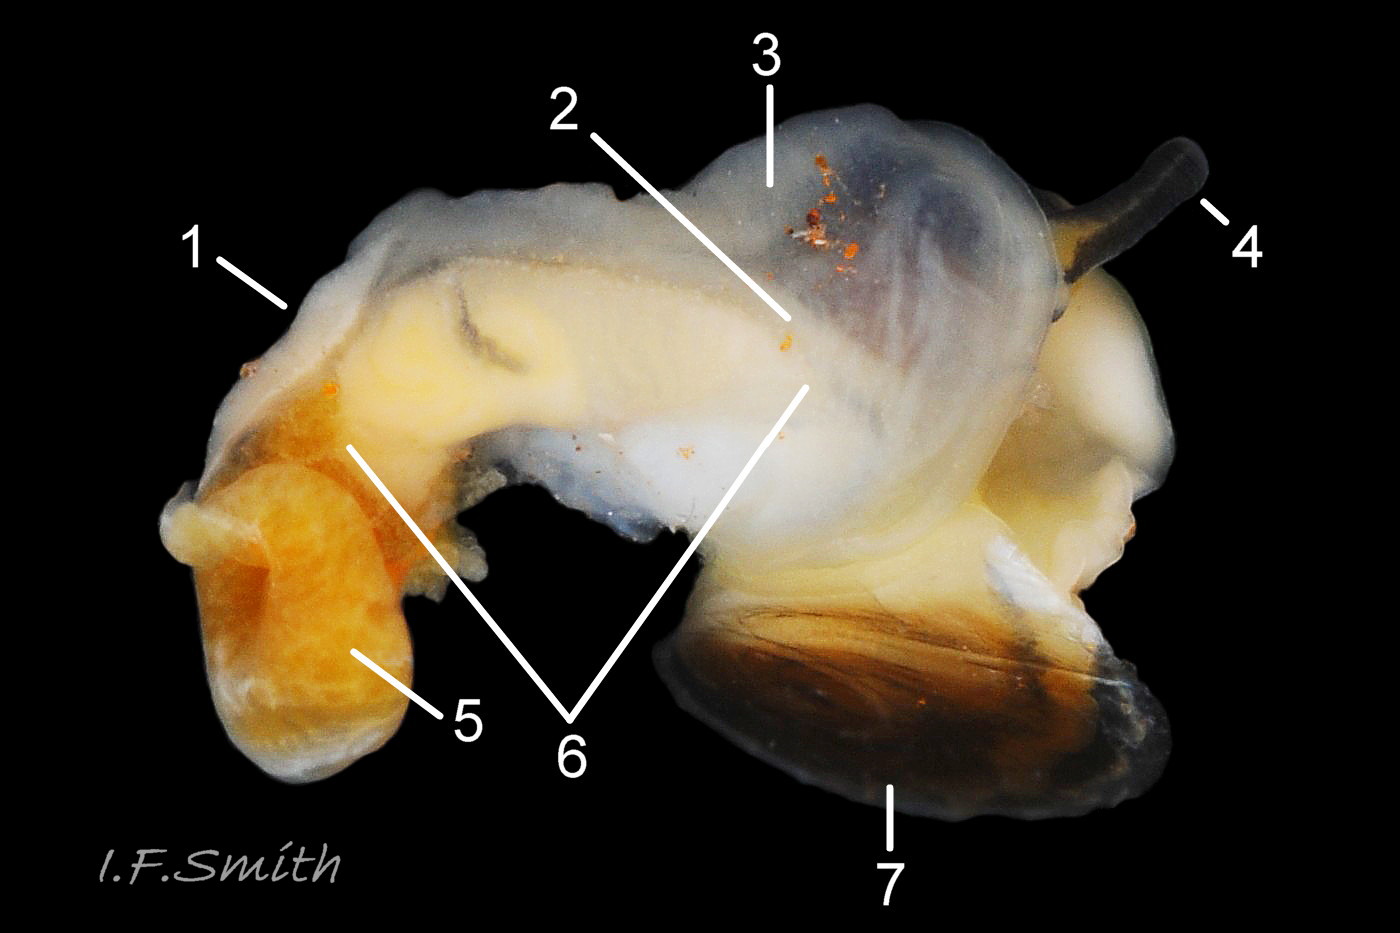 04 Littorina arcana N1168. Female removed from shell 5.7 mm high. N. Yorkshire, September 2014. Specimen N.